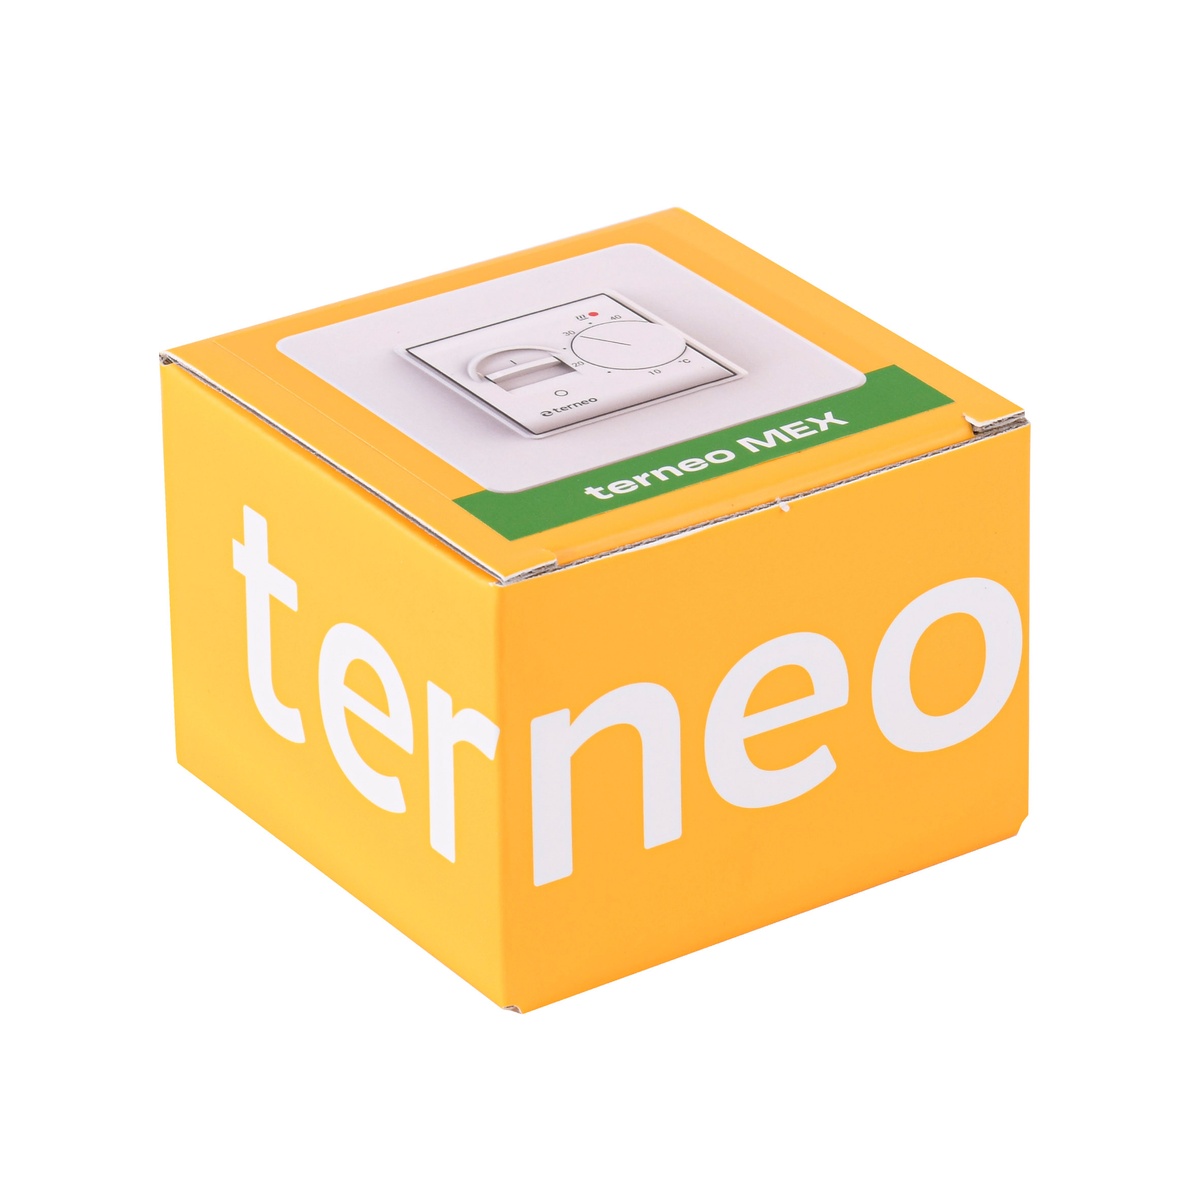 Кімнатный терморегулятор TERNEO MEX механічний 000027918